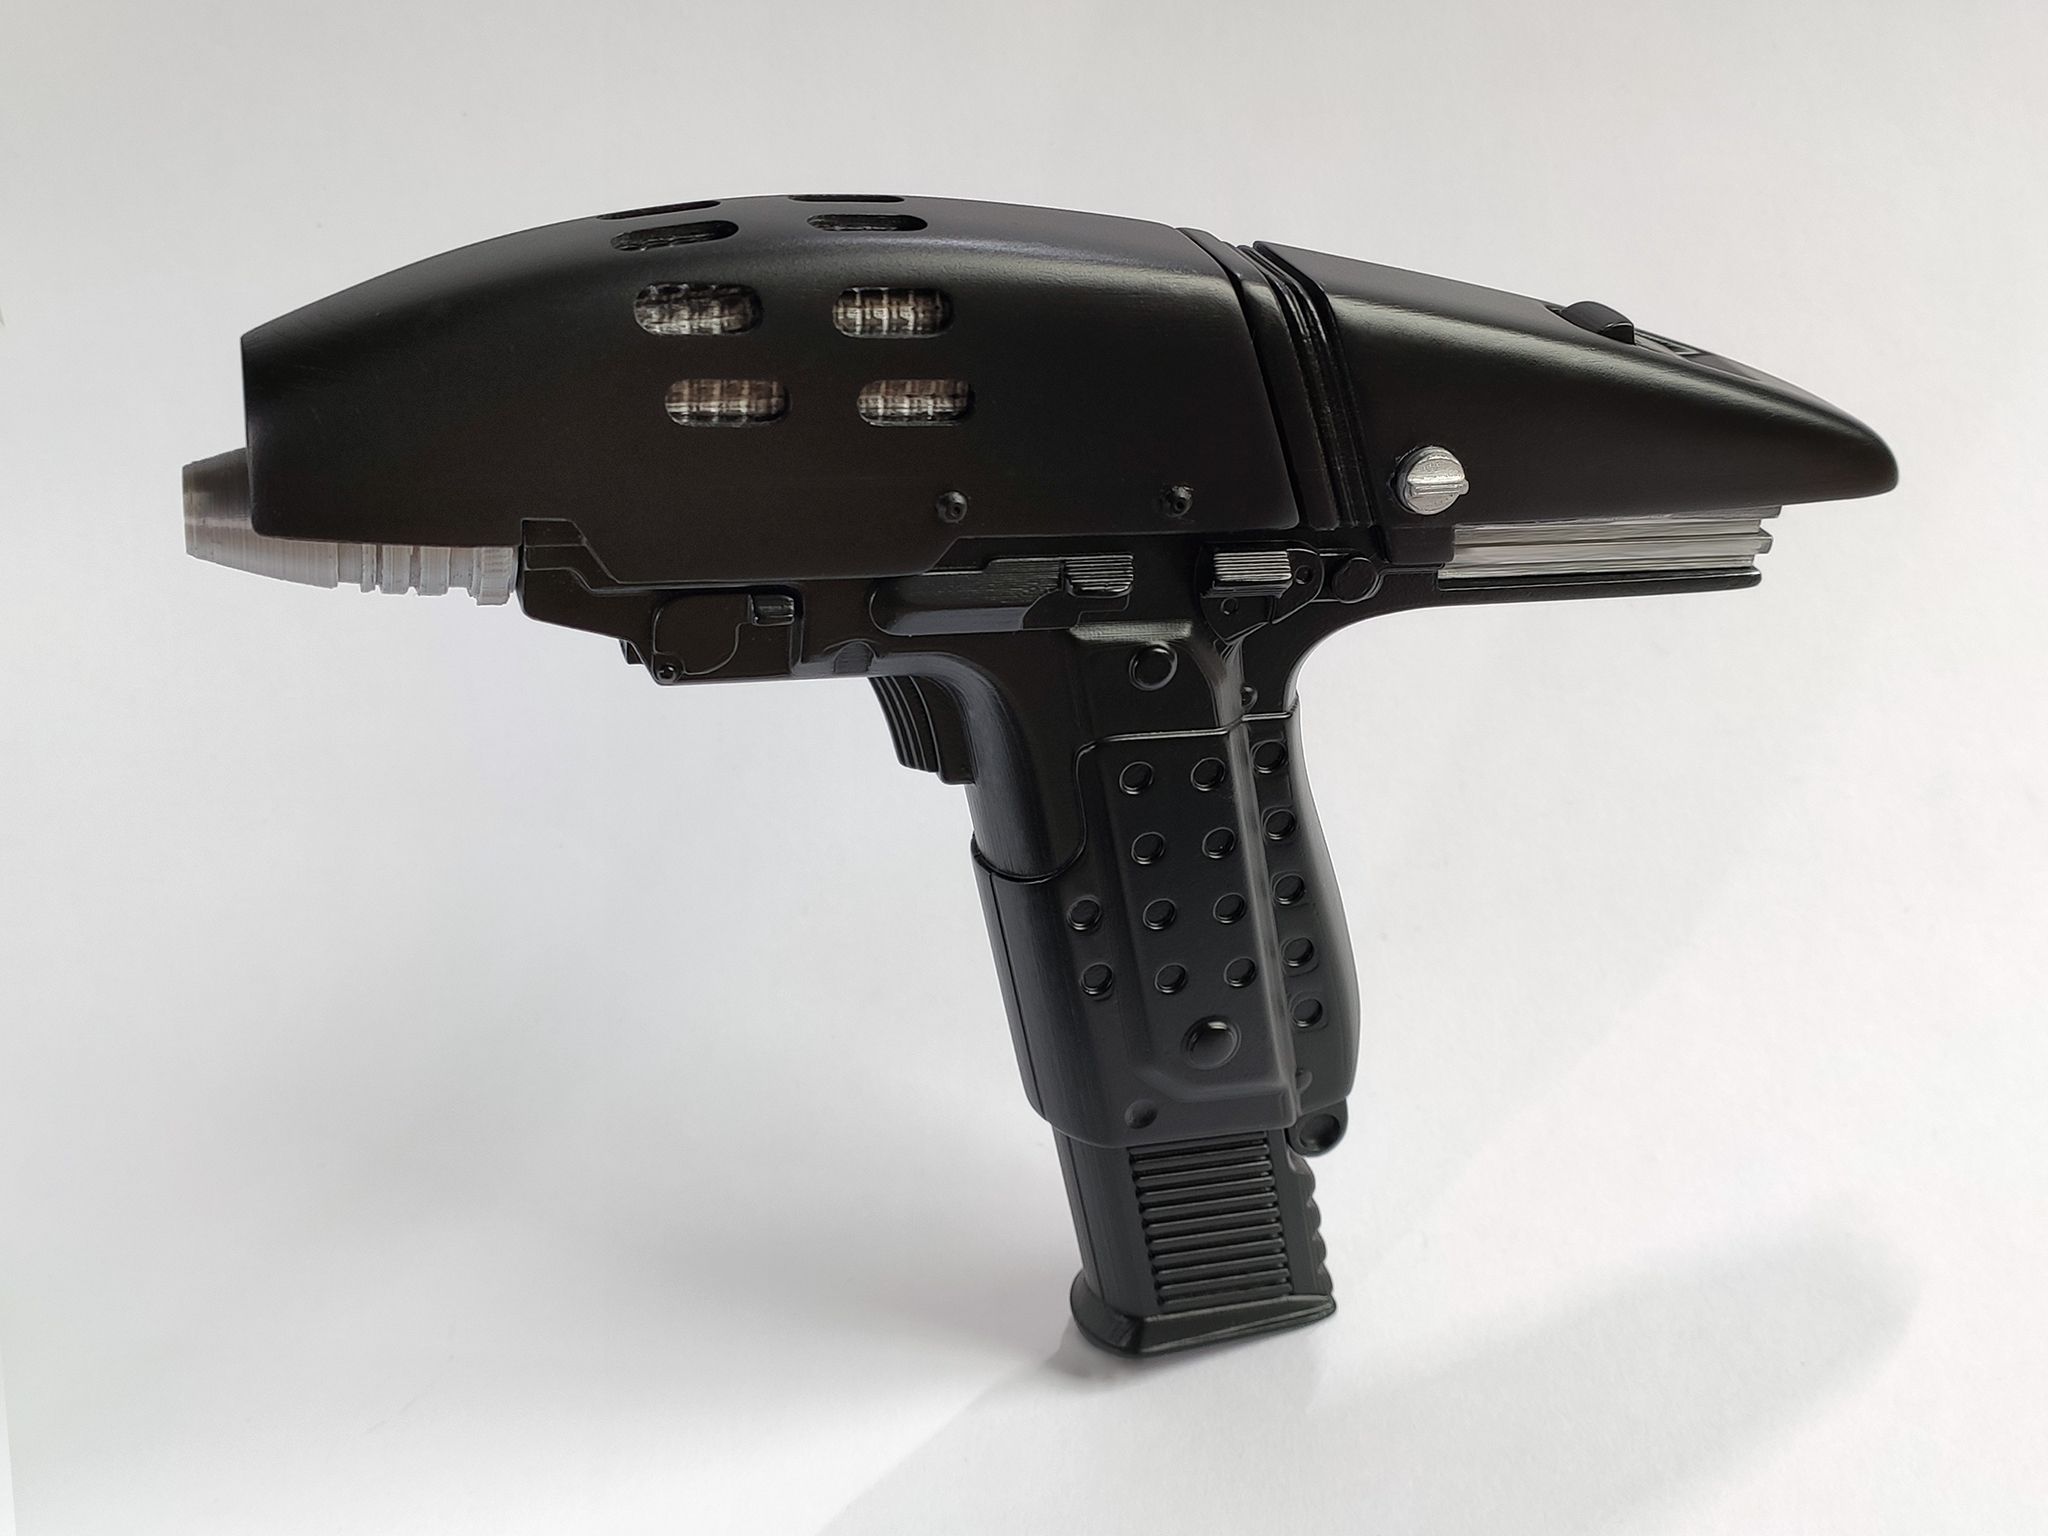 3D Print your own Assault Phaser from Star Trek VI